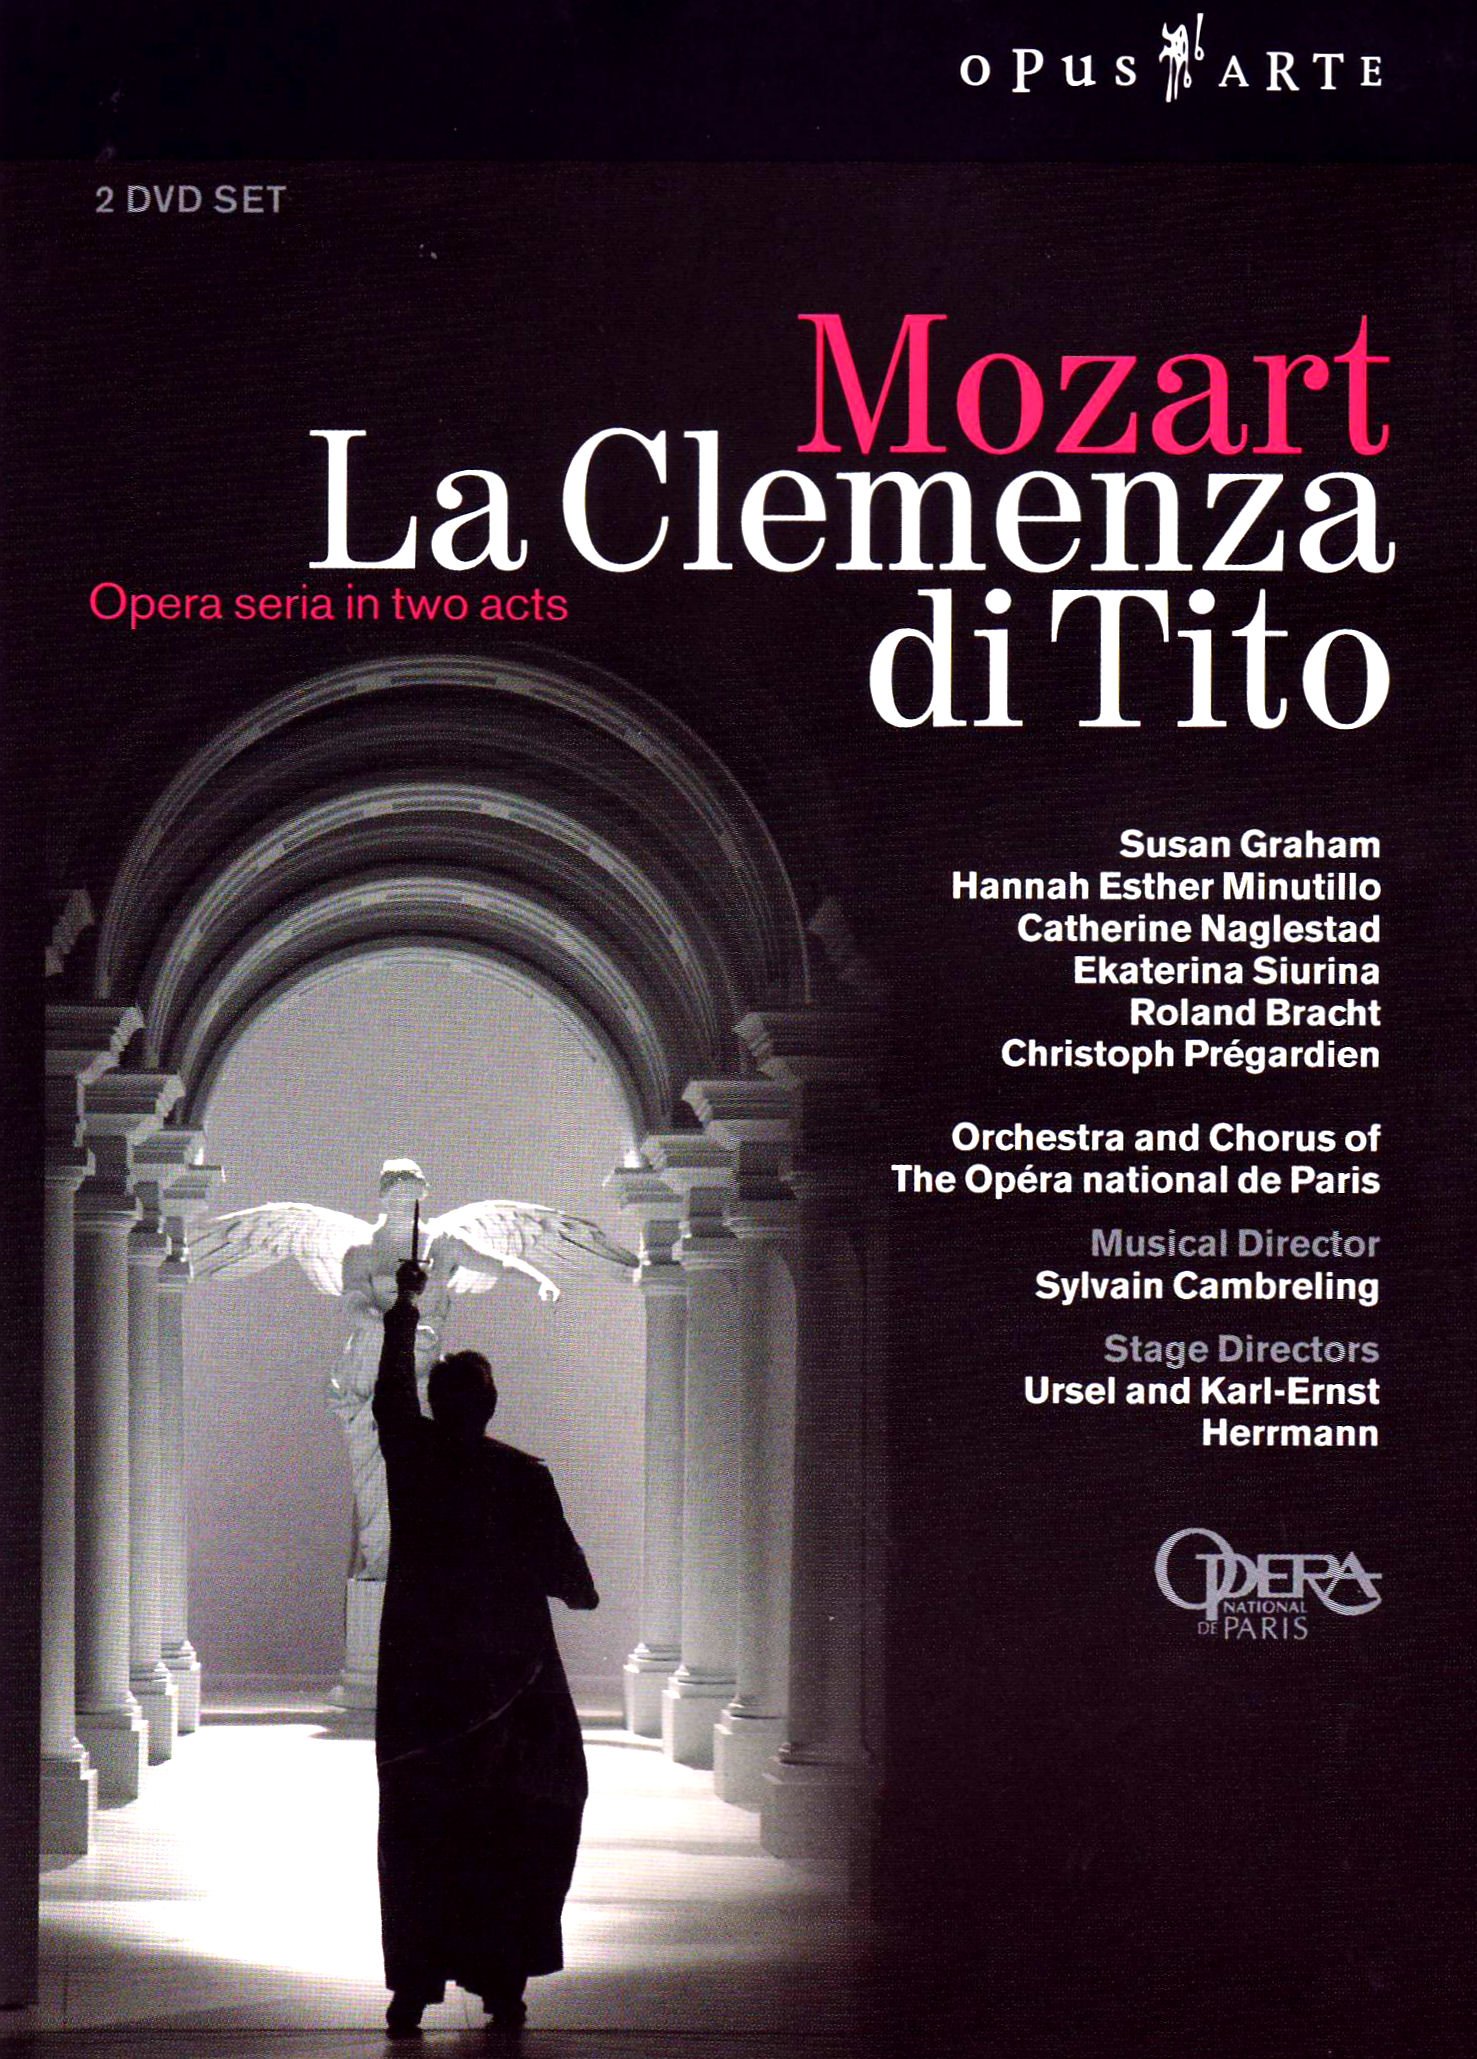 Music Dvd Wolfgang Amadeus Mozart - La Clemenza Di Tito (2 Dvd) NUOVO SIGILLATO, EDIZIONE DEL 01/01/2006 SUBITO DISPONIBILE